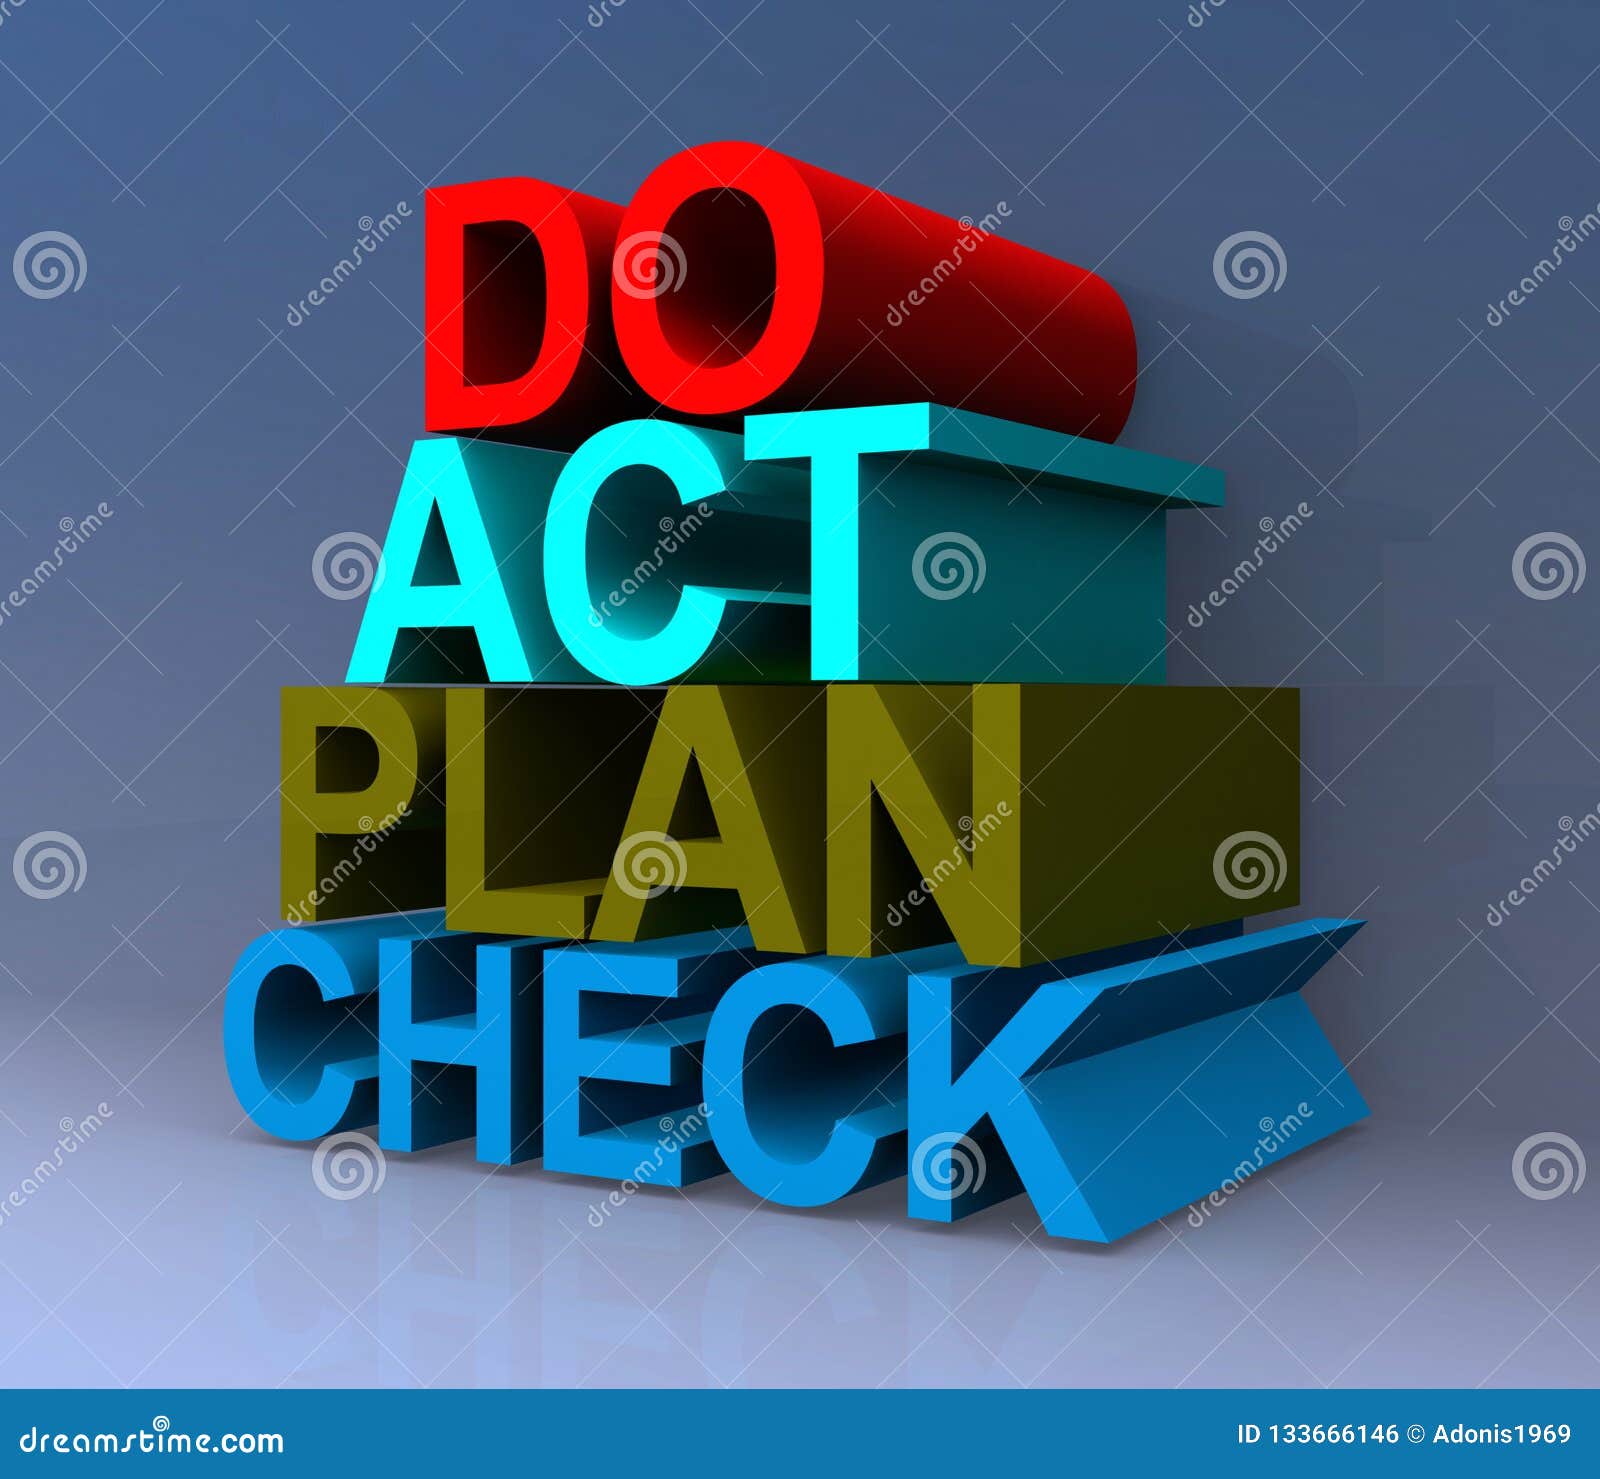 do act plan check